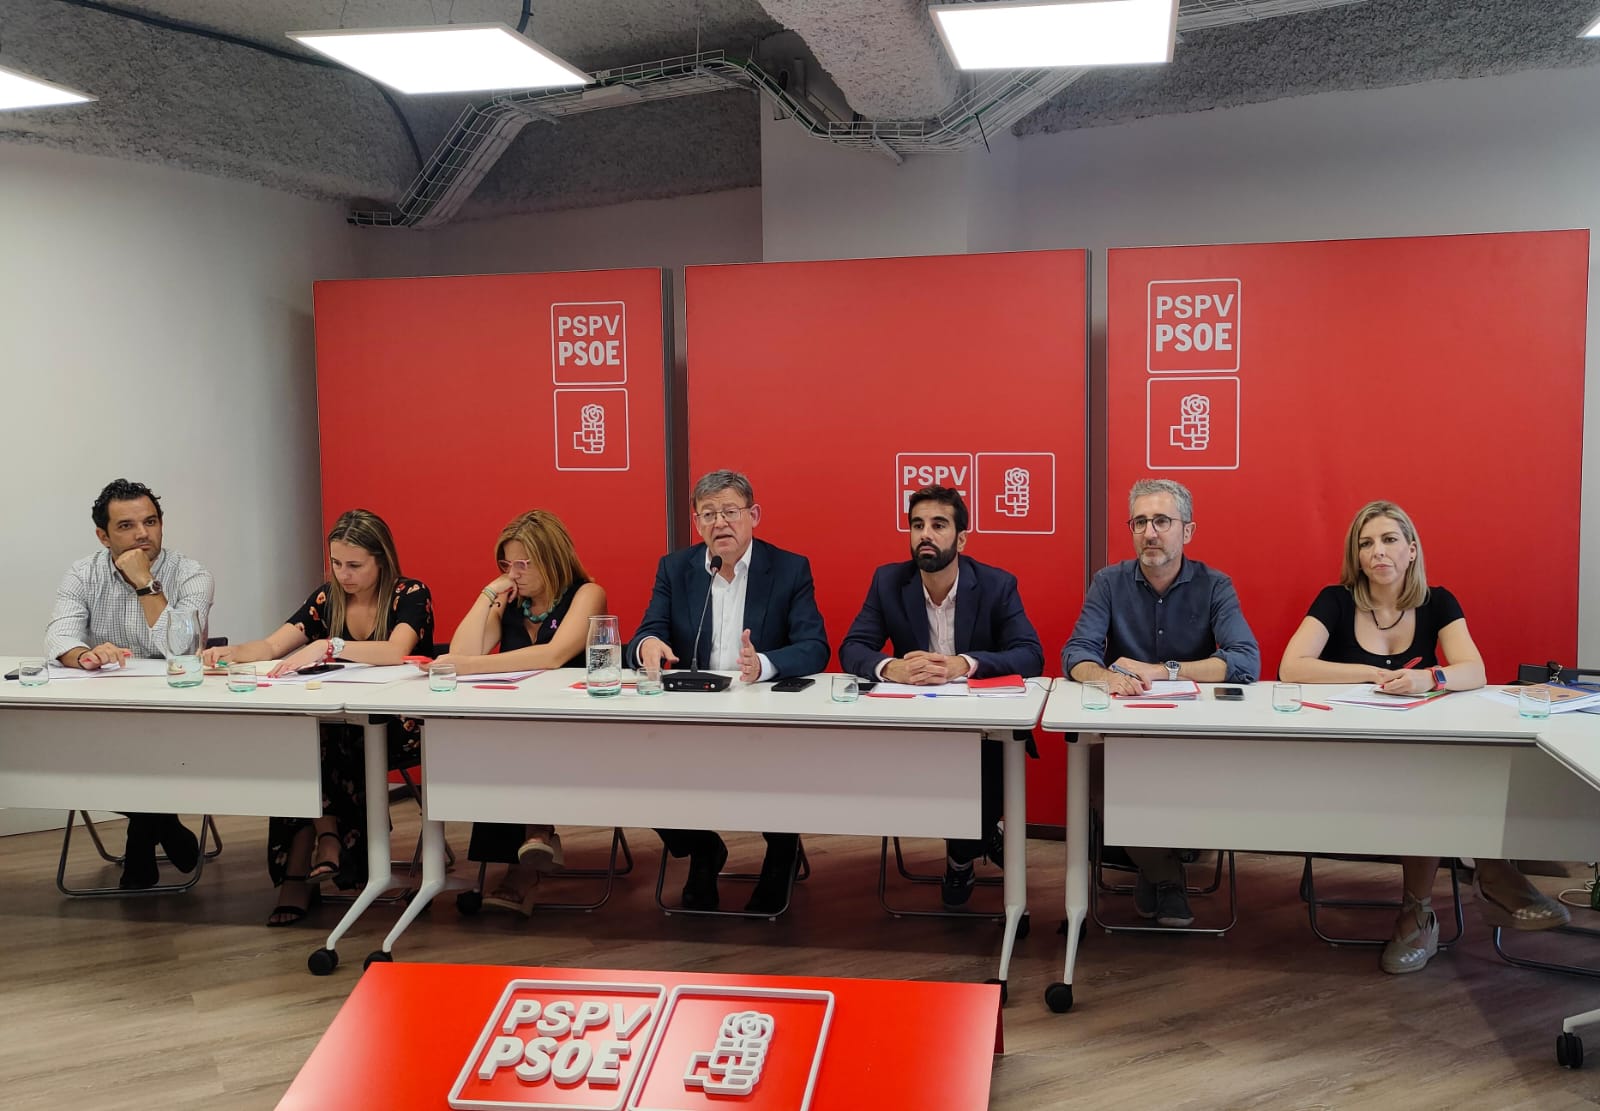 En este momento estás viendo El PSPV- PSOE muestra su apoyo rotundo a Pedro Sánchez para formar un Gobierno “de progreso y que representa la España plural y diversa”